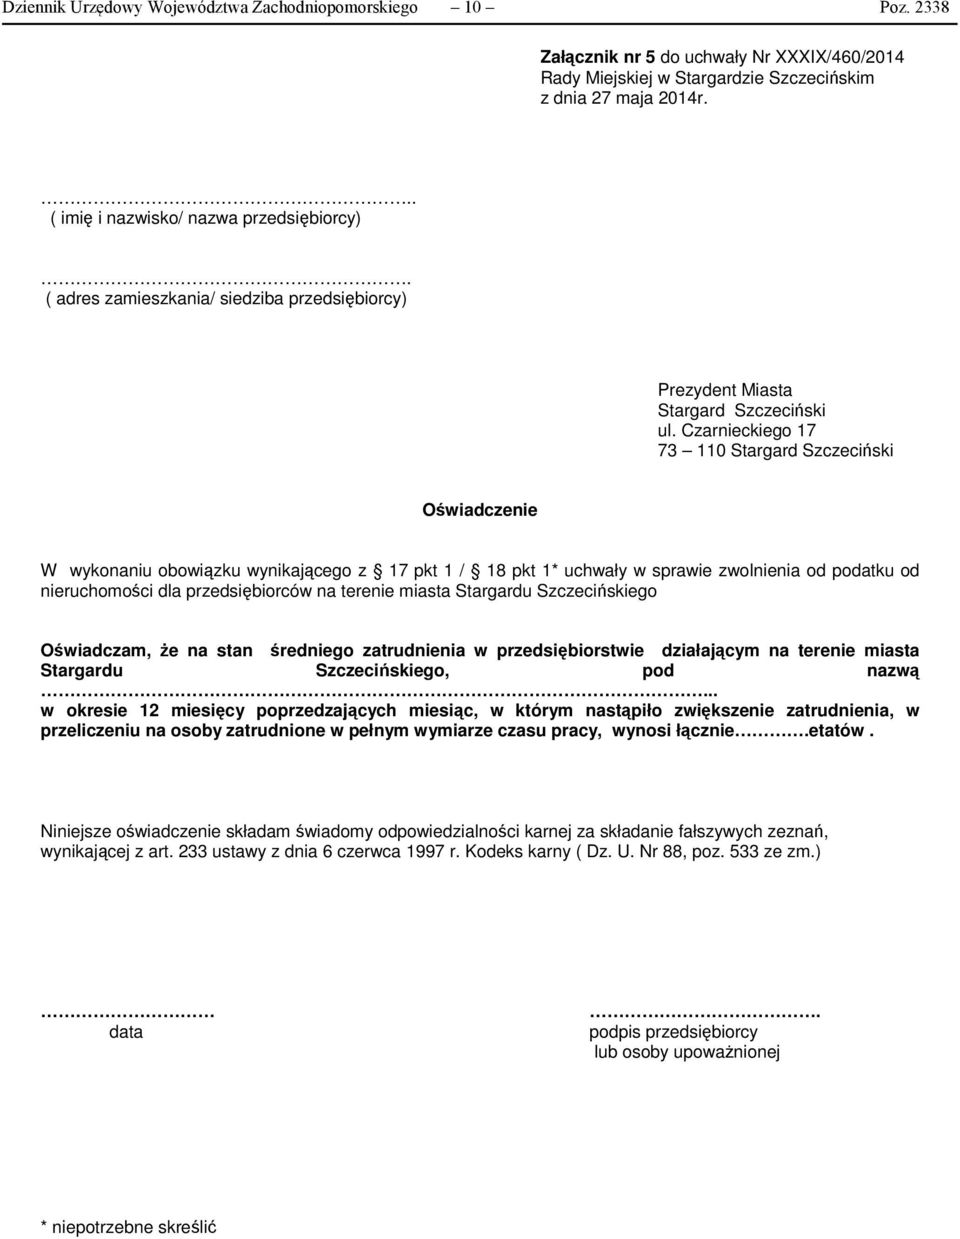 Czarnieckiego 17 73 110 Stargard Szczeciński Oświadczenie W wykonaniu obowiązku wynikającego z 17 pkt 1 / 18 pkt 1* uchwały w sprawie zwolnienia od podatku od nieruchomości dla przedsiębiorców na